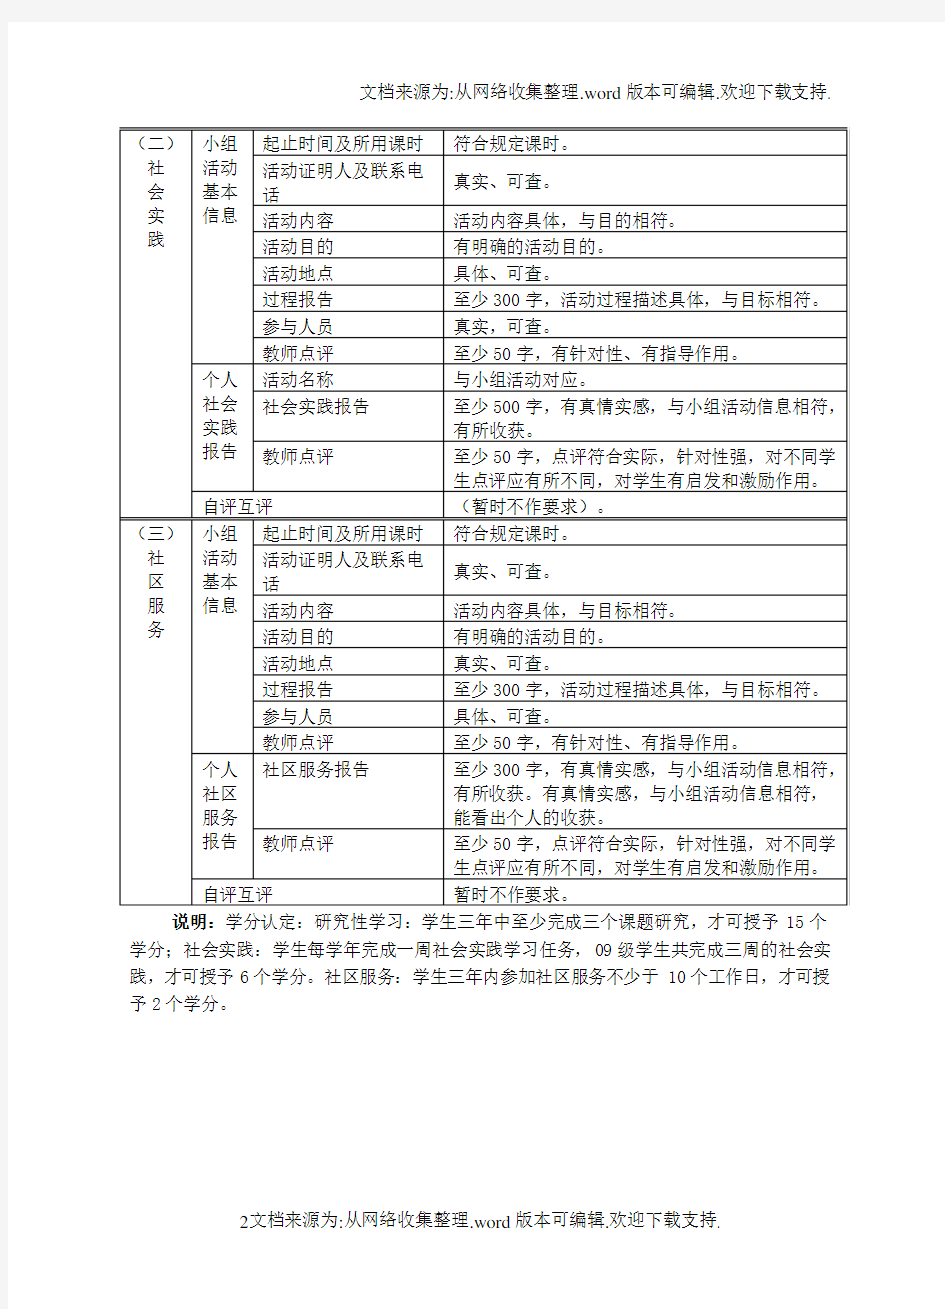 综合实践学生手册完整版湖北省团风中学